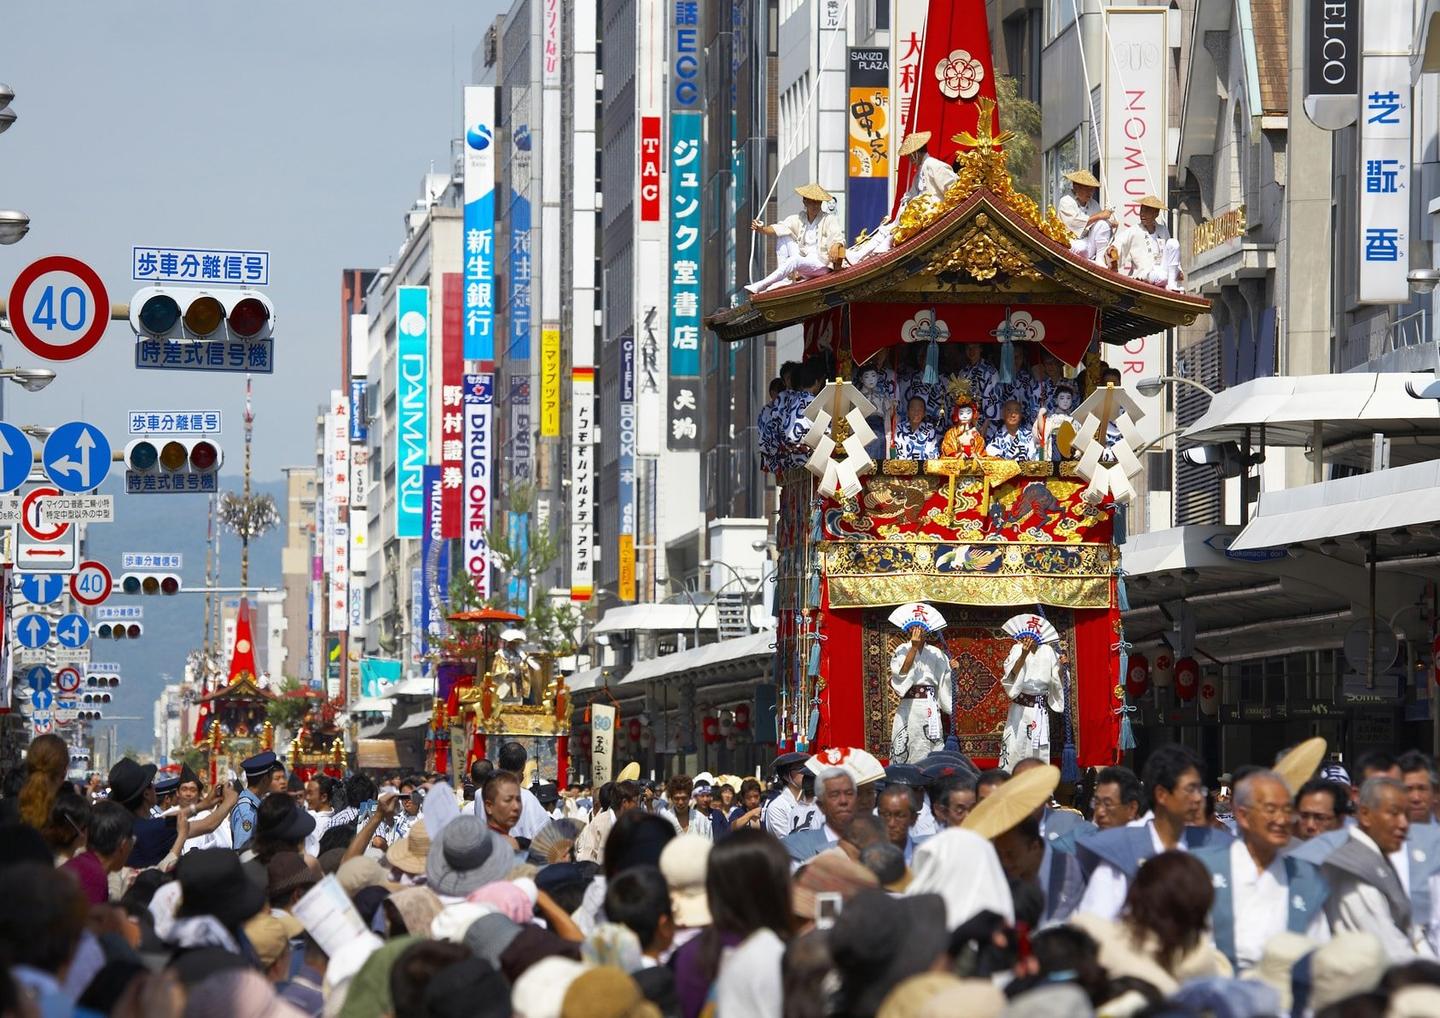 日本东北地区的神秘之旅，岩手县的传统节日“花卷祭” | Experiences in Japan